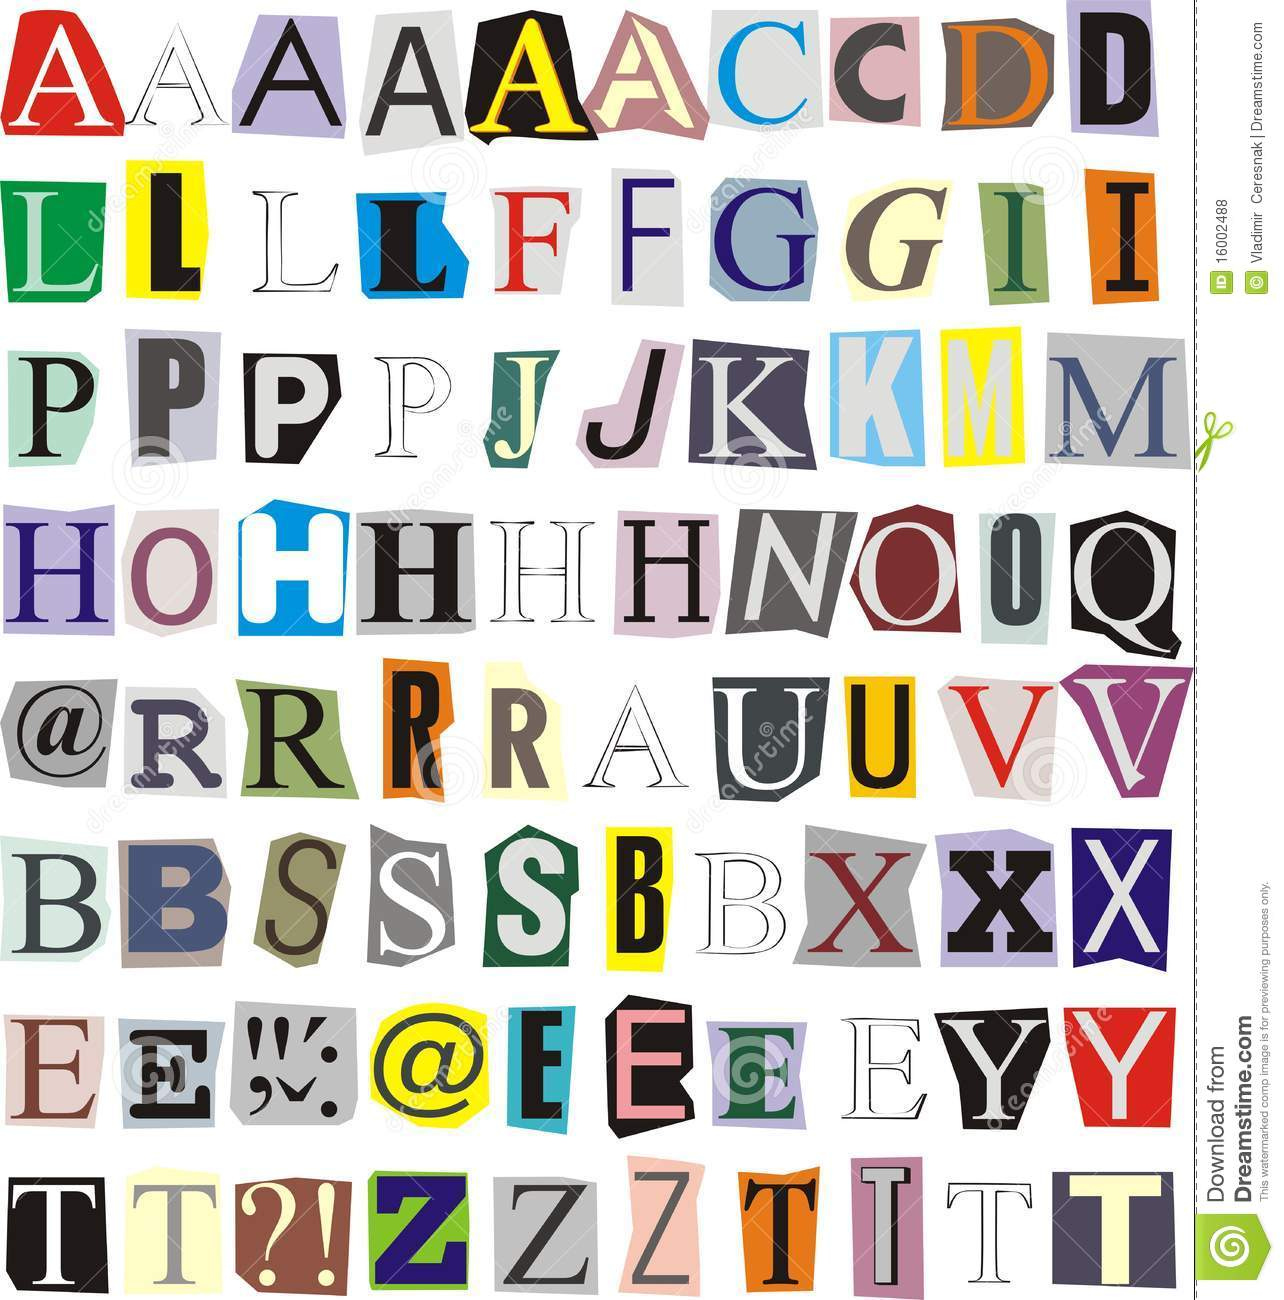 10 Magazine Cut Out Letters Font Images Magazine Letters Cut Out 